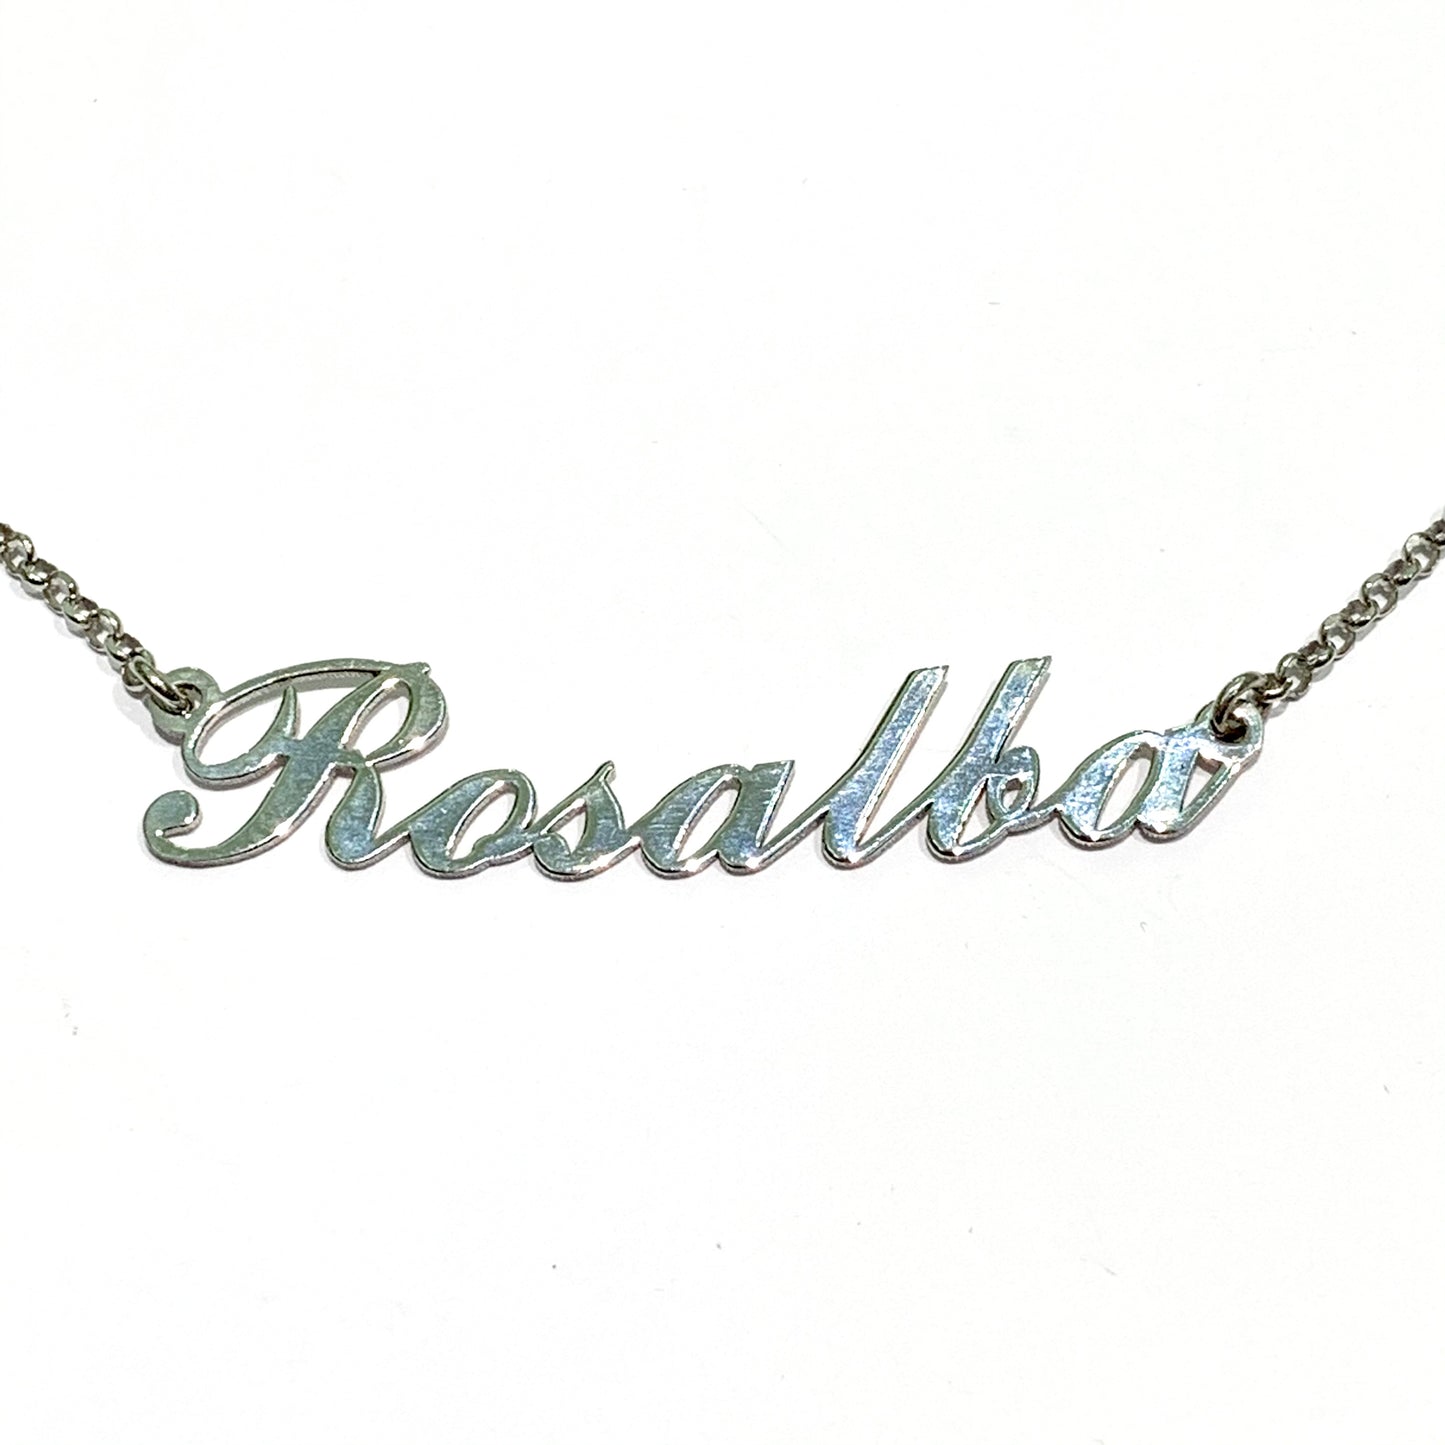 Collana in argento con nome Rosalba ricoperto da zirconi.  Lunghezza catena 40 cm.  Lunghezza nome 4,5 cm, altezza lettere 0,5 cm con iniziale da 1 cm.  Spedizione gratuita con confezione regalo. 